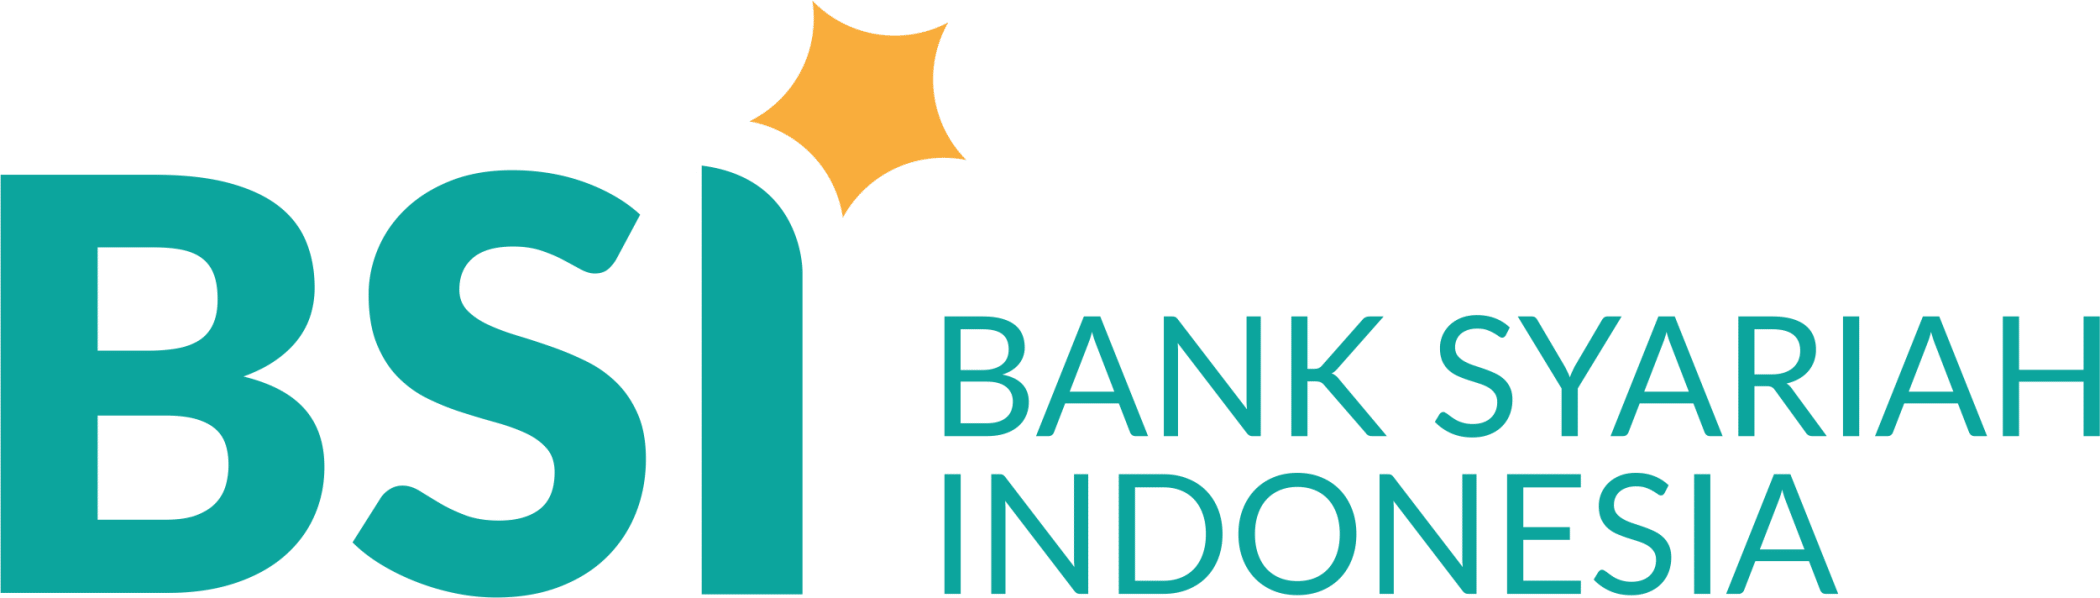 Bank Syariah Indonesia BSI Horizontal - LPK Prisma Pangkalan Bun